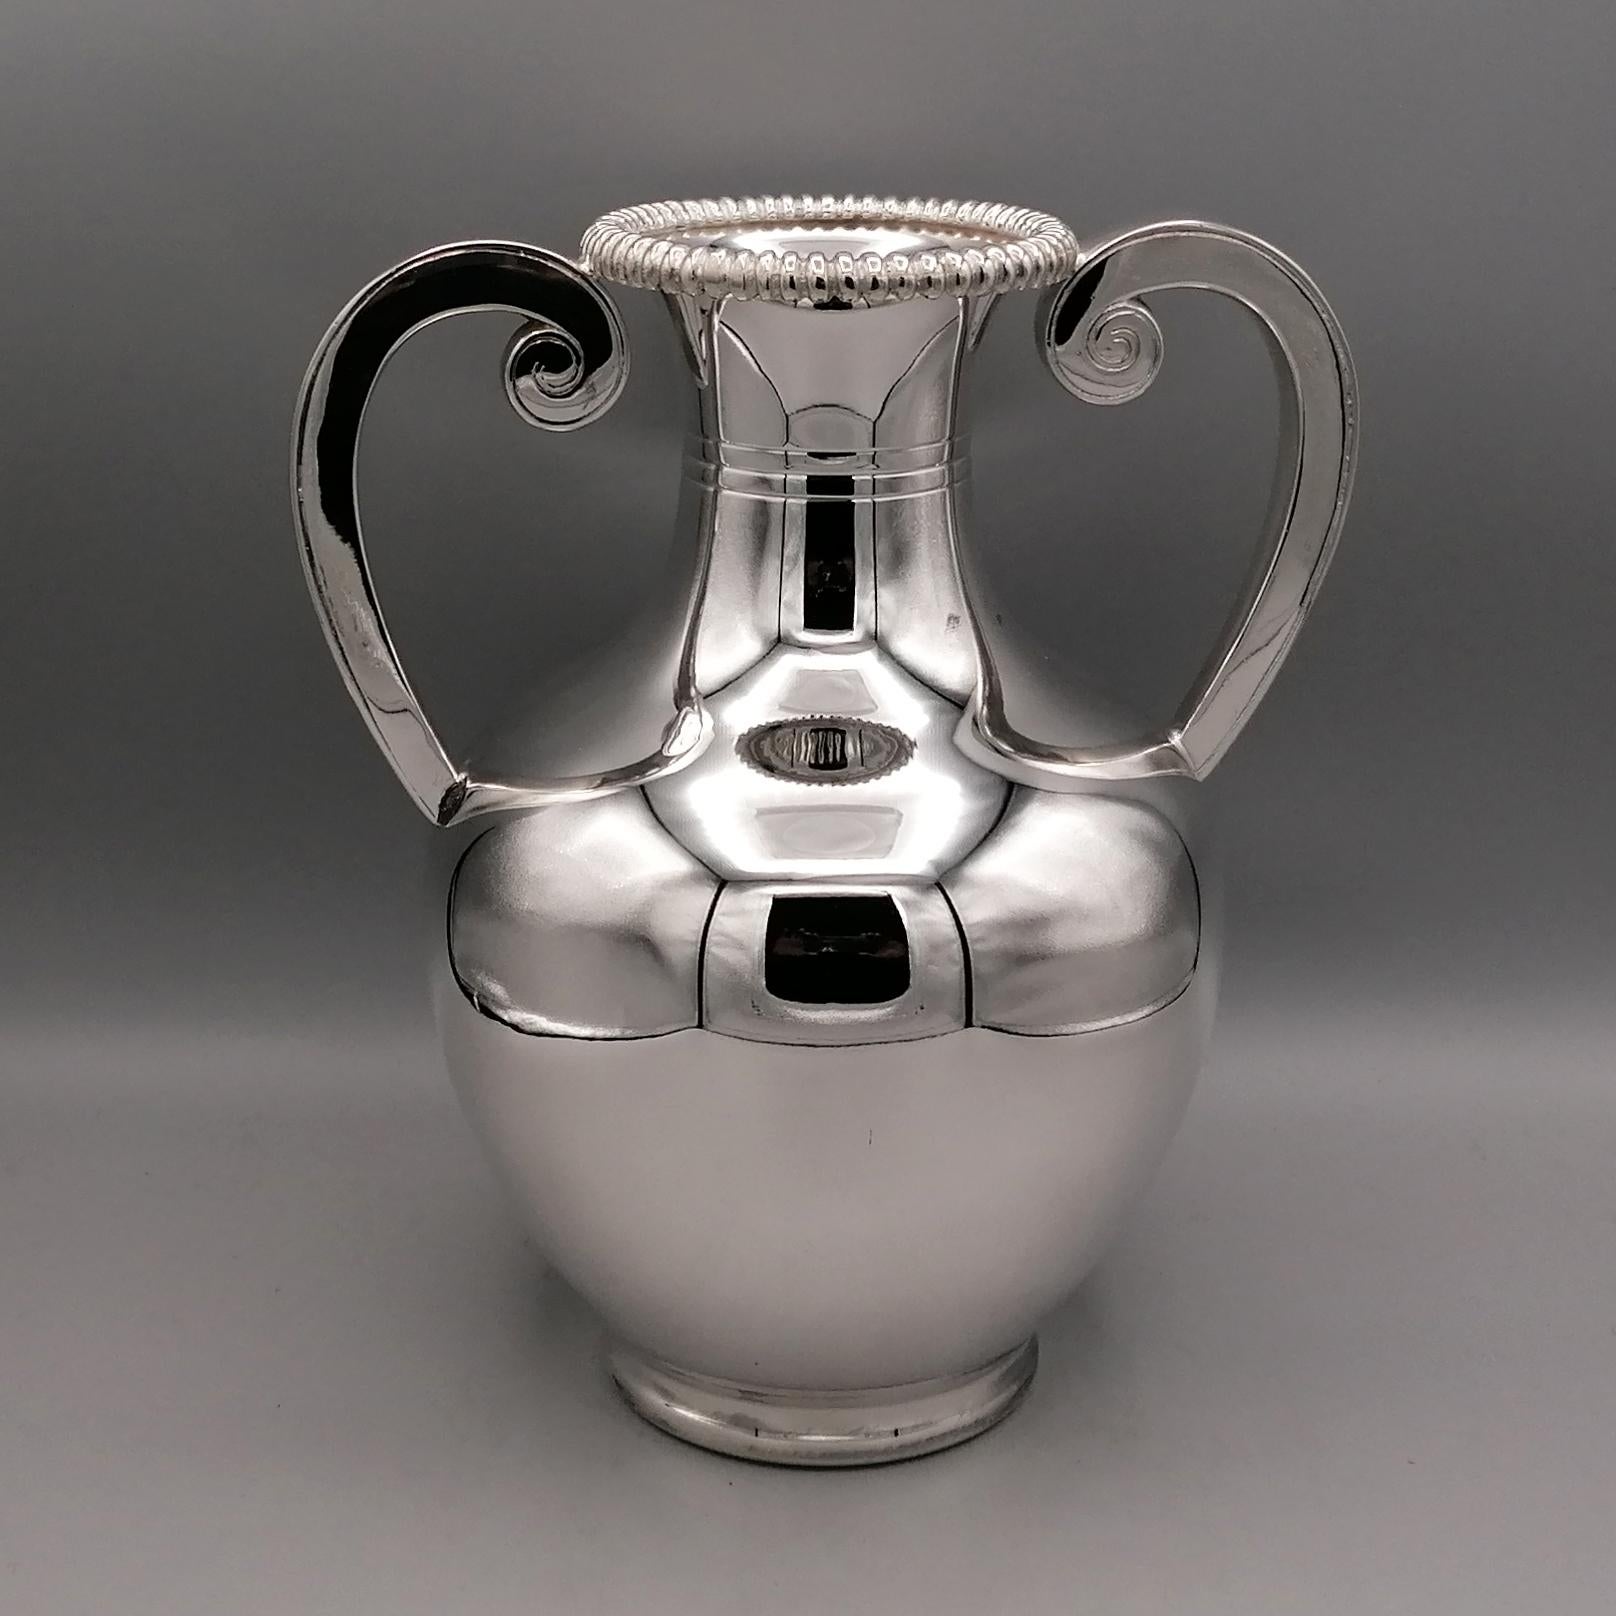 Amphora Vase mit Henkeln aus 800 massivem Silber im neoklassischen Stil.
Der Körper ist rund, abgerundet und völlig glatt. Nur am Hals der Amphora wurden 3 Rillen angebracht, um die Gleichförmigkeit der Struktur aufzubrechen.
Auf die Mündung der